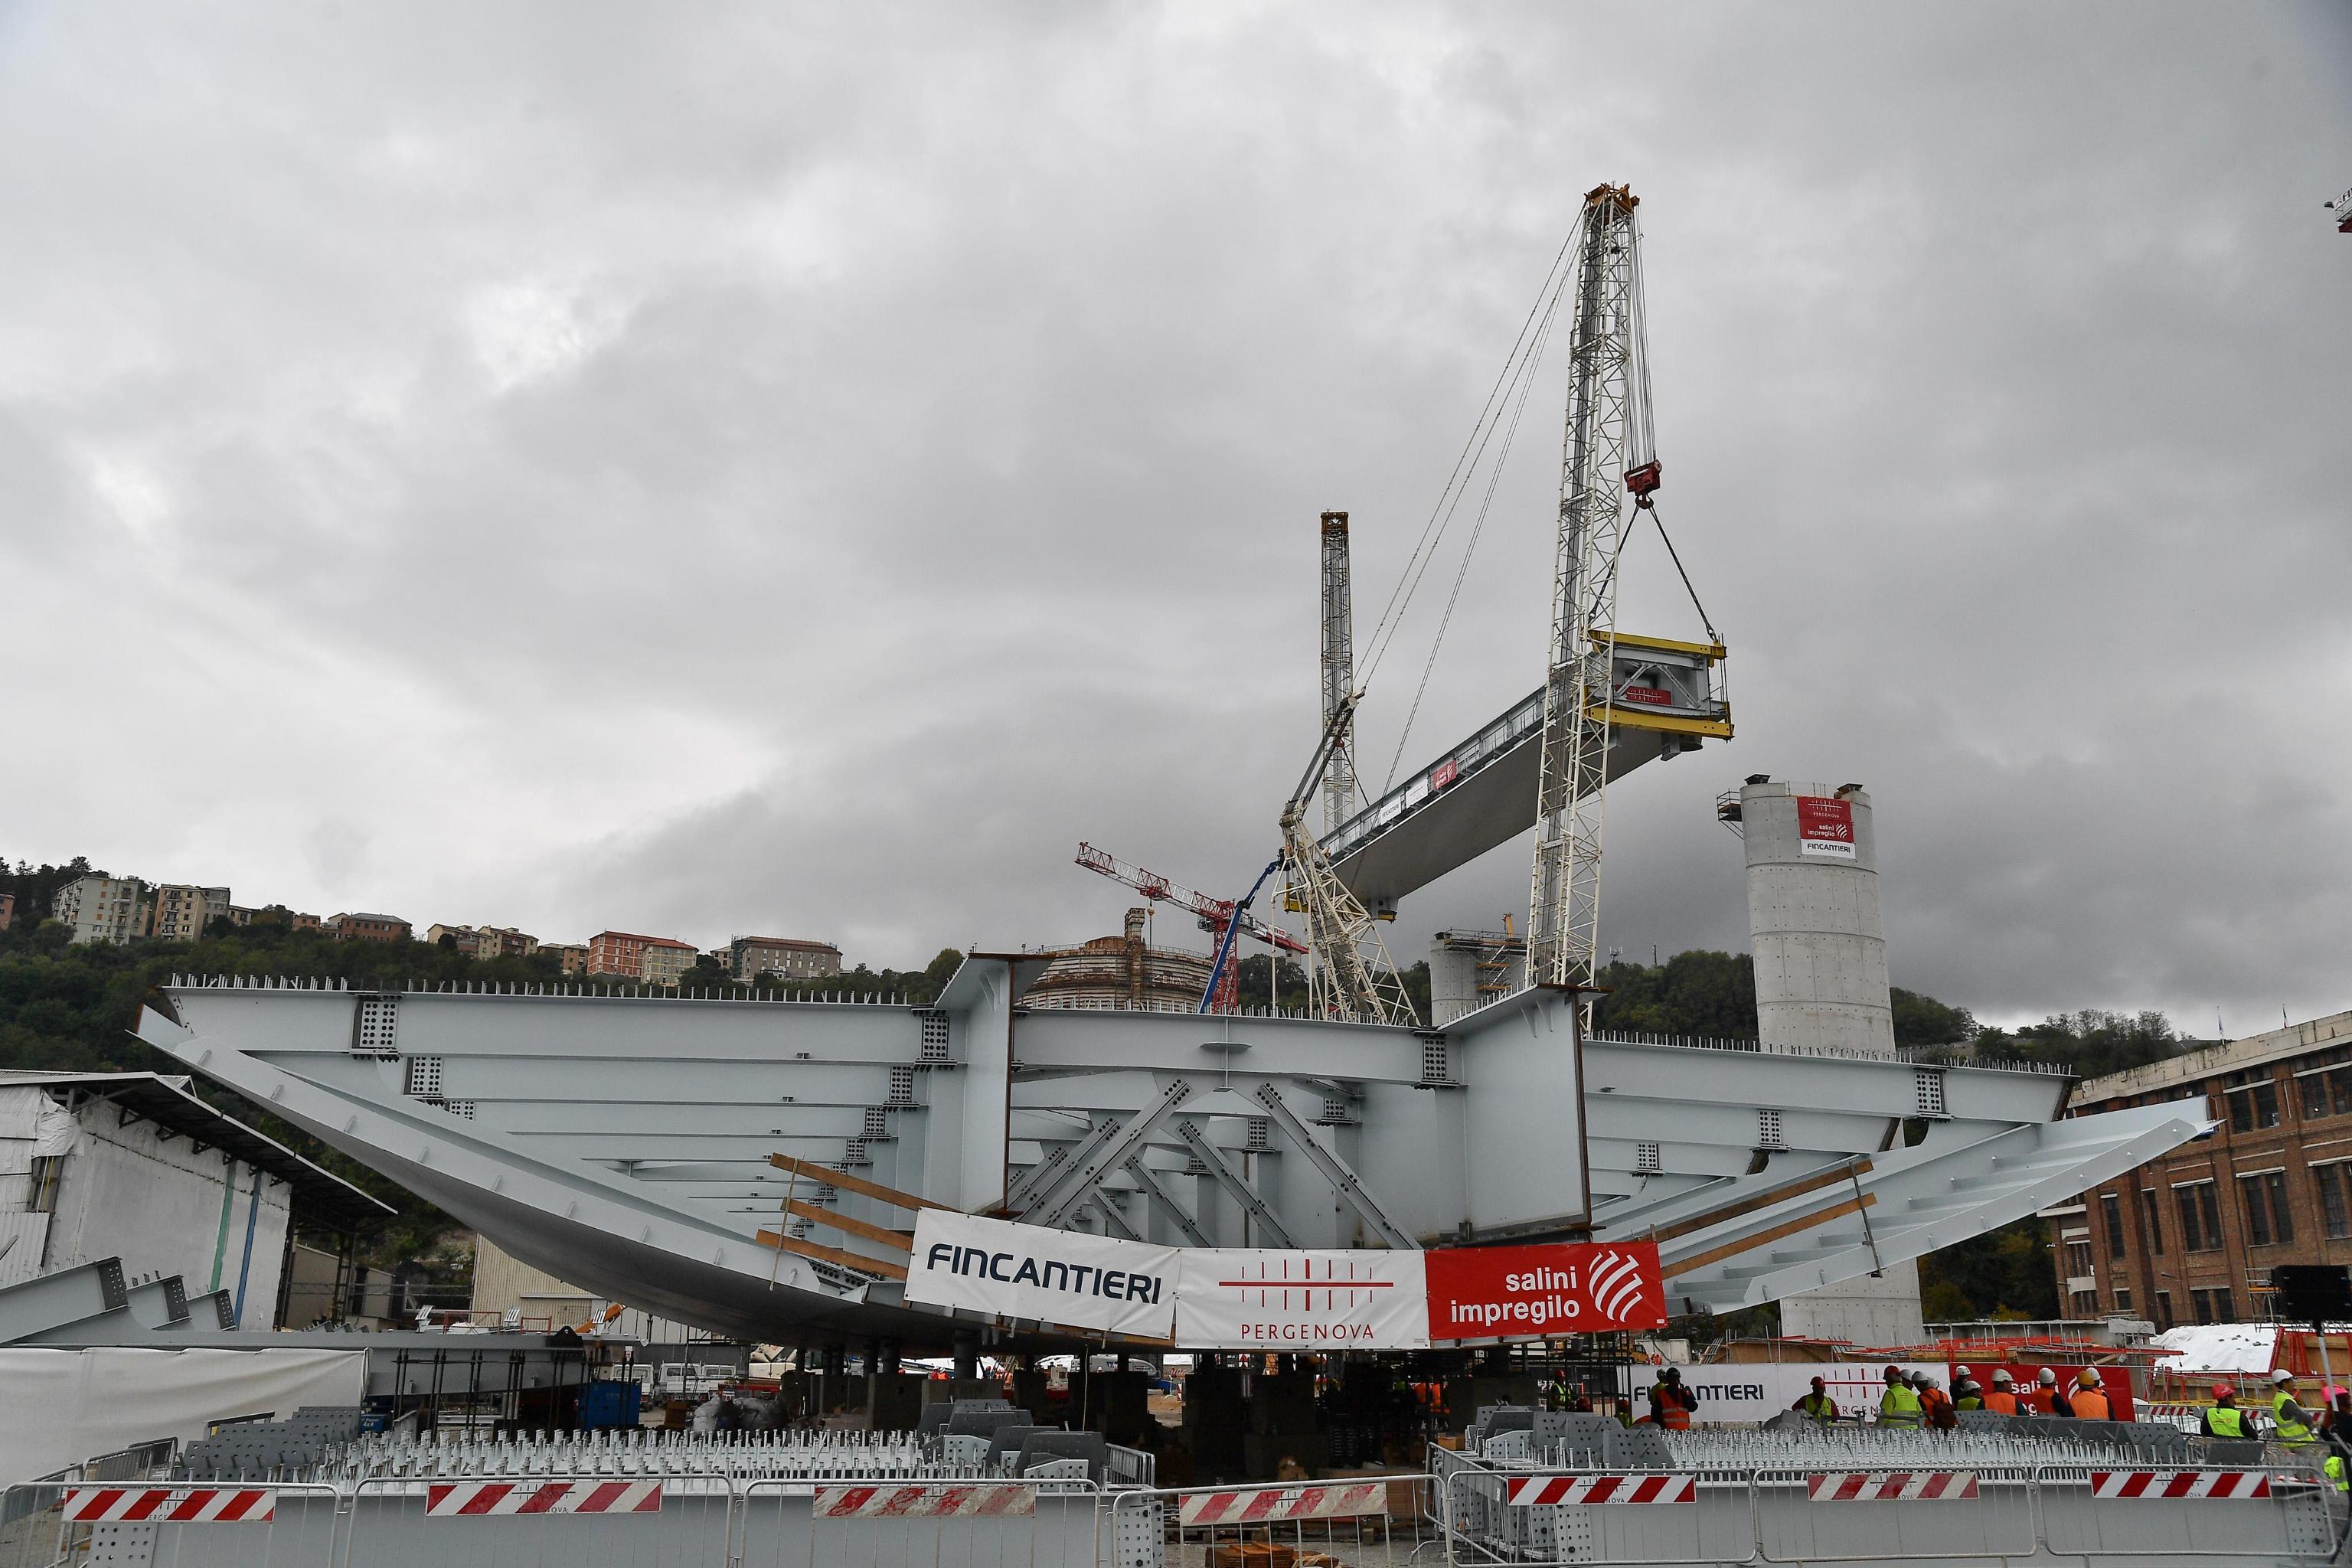 "Come ha detto più volte in questi mesi Renzo Piano, nel ponte c'è il Dna dei genovesi: forte come l'acciaio e somiglia a una nave" ha aggiunto Bucci